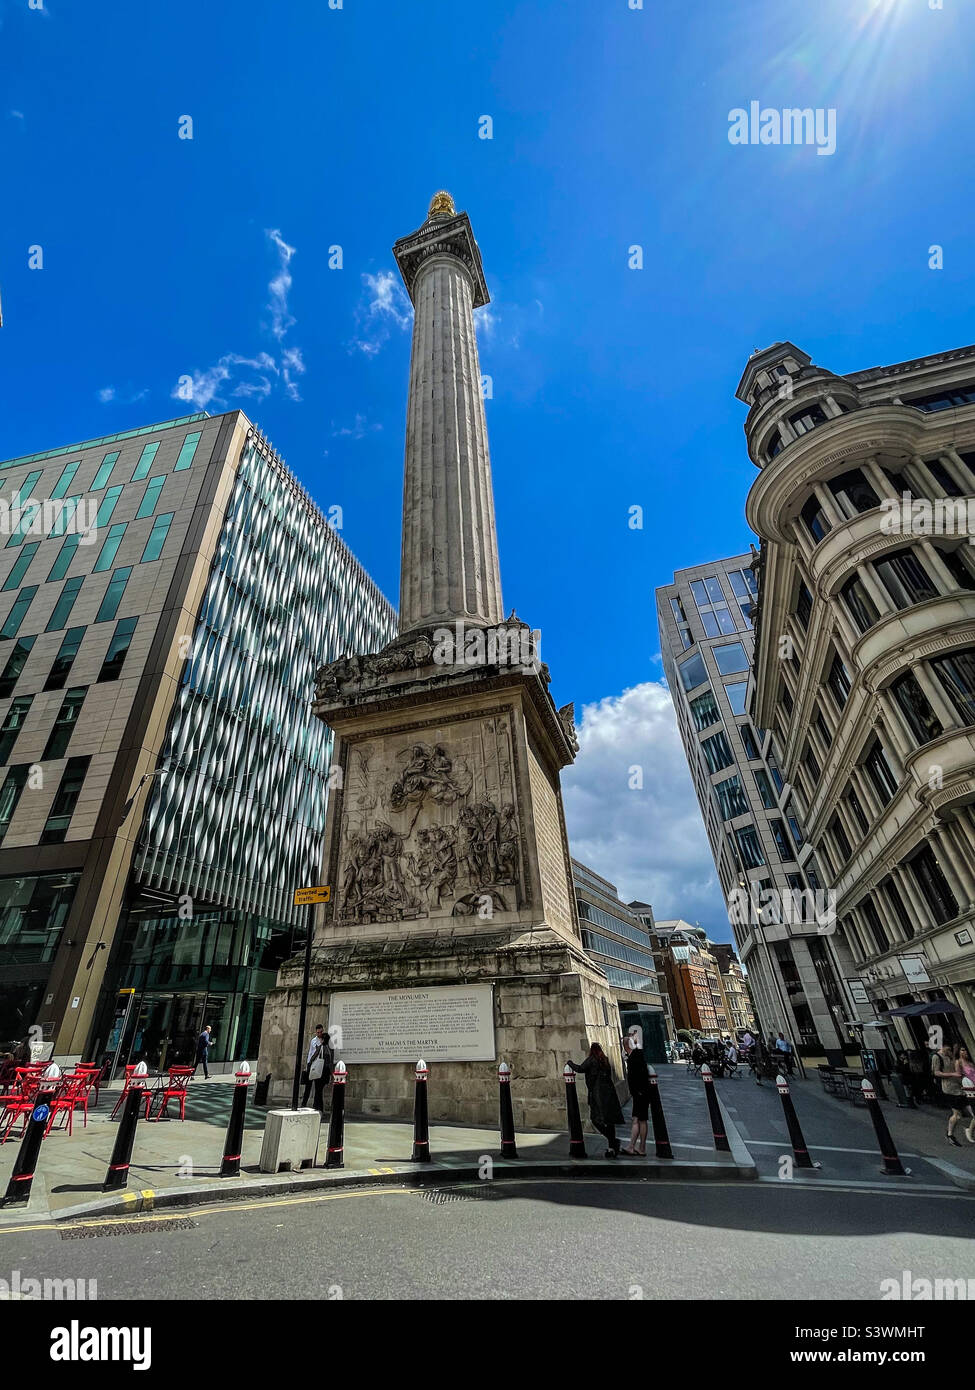 Monument de Londres et architecture contemporaine Banque D'Images